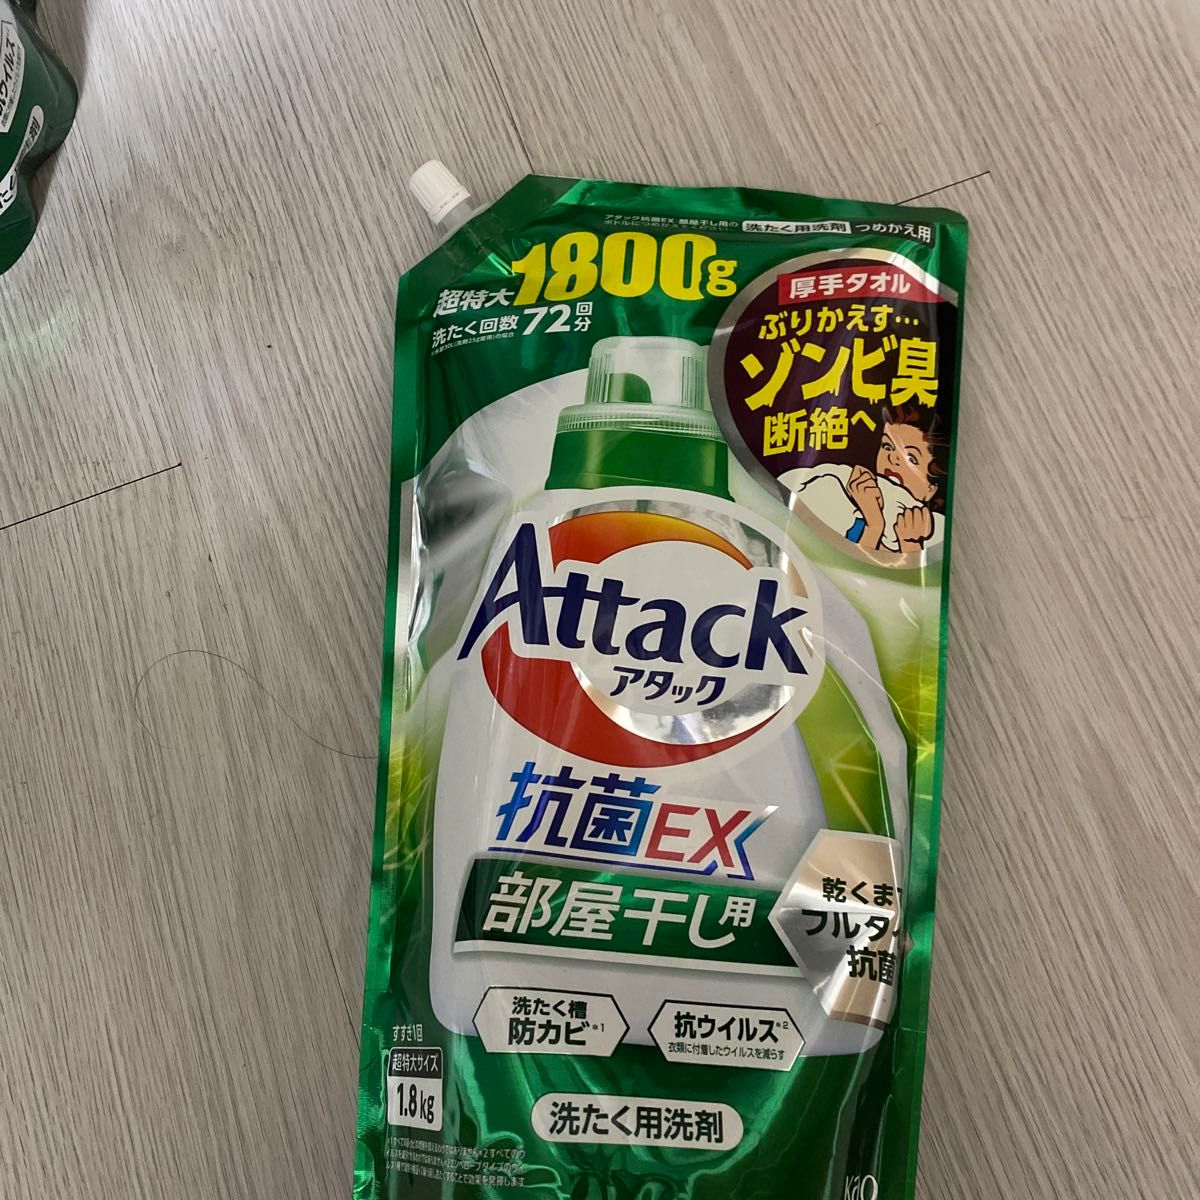 アタック 抗菌EX 部屋干し用 [つめかえ用] サンシャイングリーンの香り 1800g × 1個